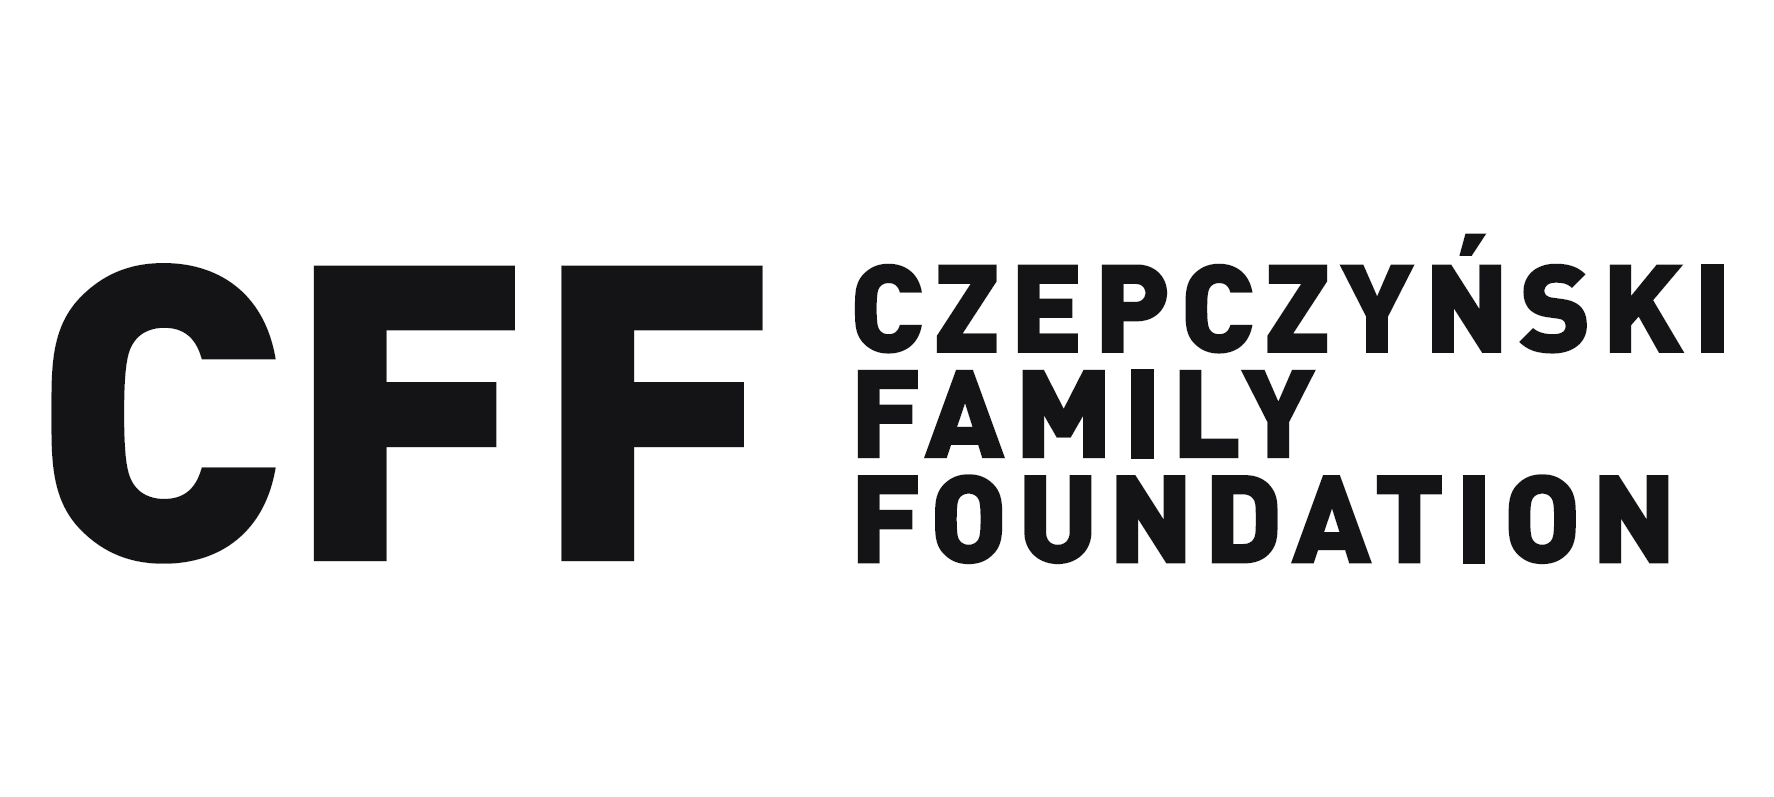 Czepczynski Family Foundation 